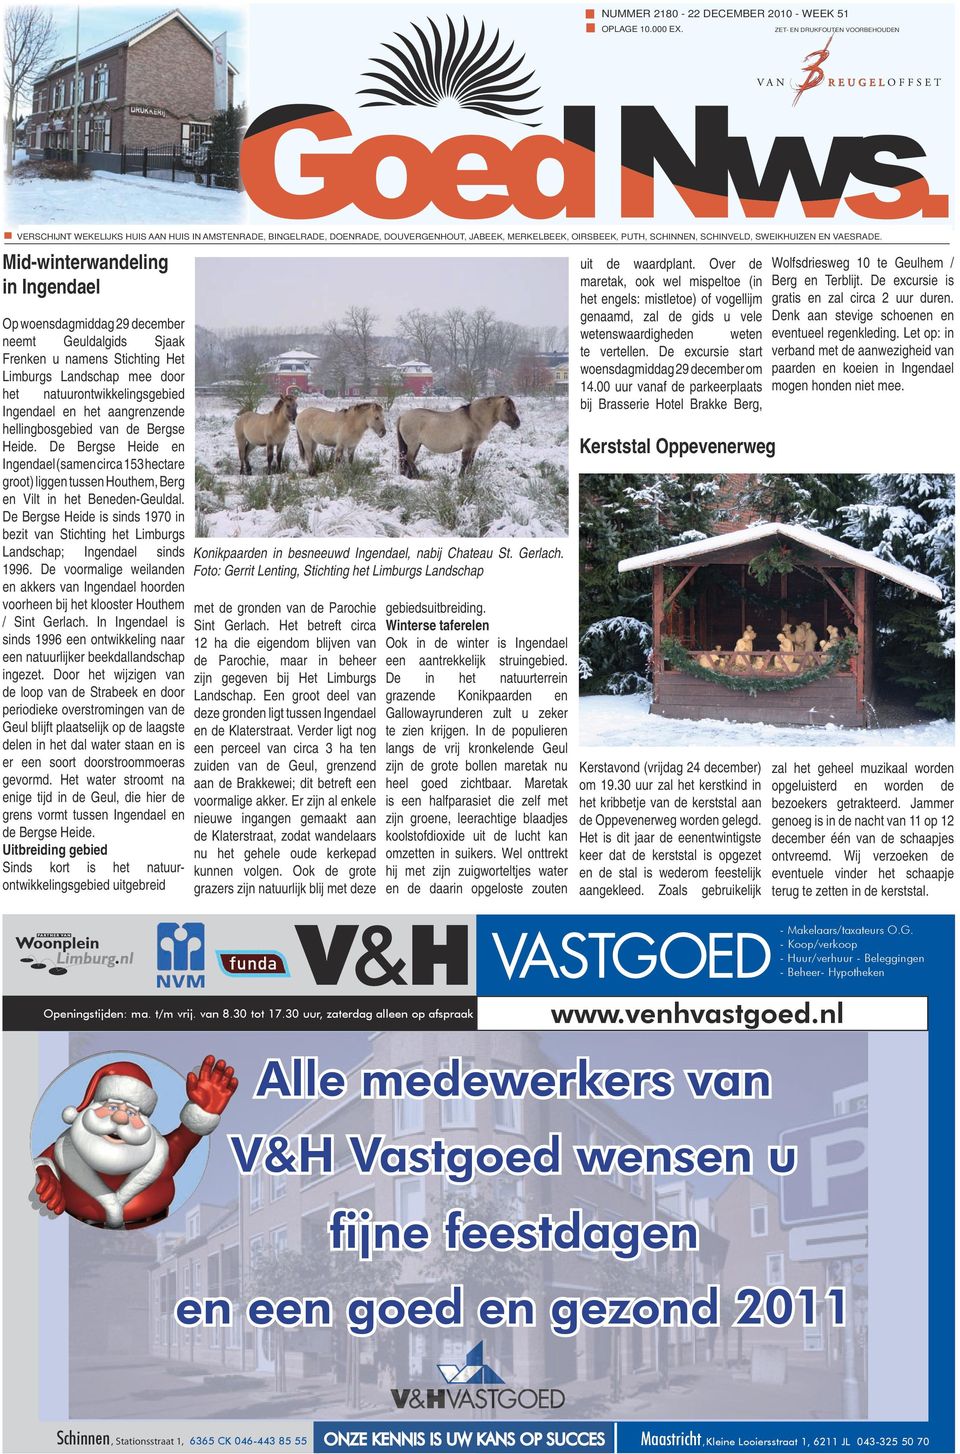 Mid-winterwandeling in Ingendael Op woensdagmiddag 29 december neemt Geuldalgids Sjaak Frenken u namens Stichting Het Limburgs Landschap mee door het natuurontwikkelingsgebied Ingendael en het